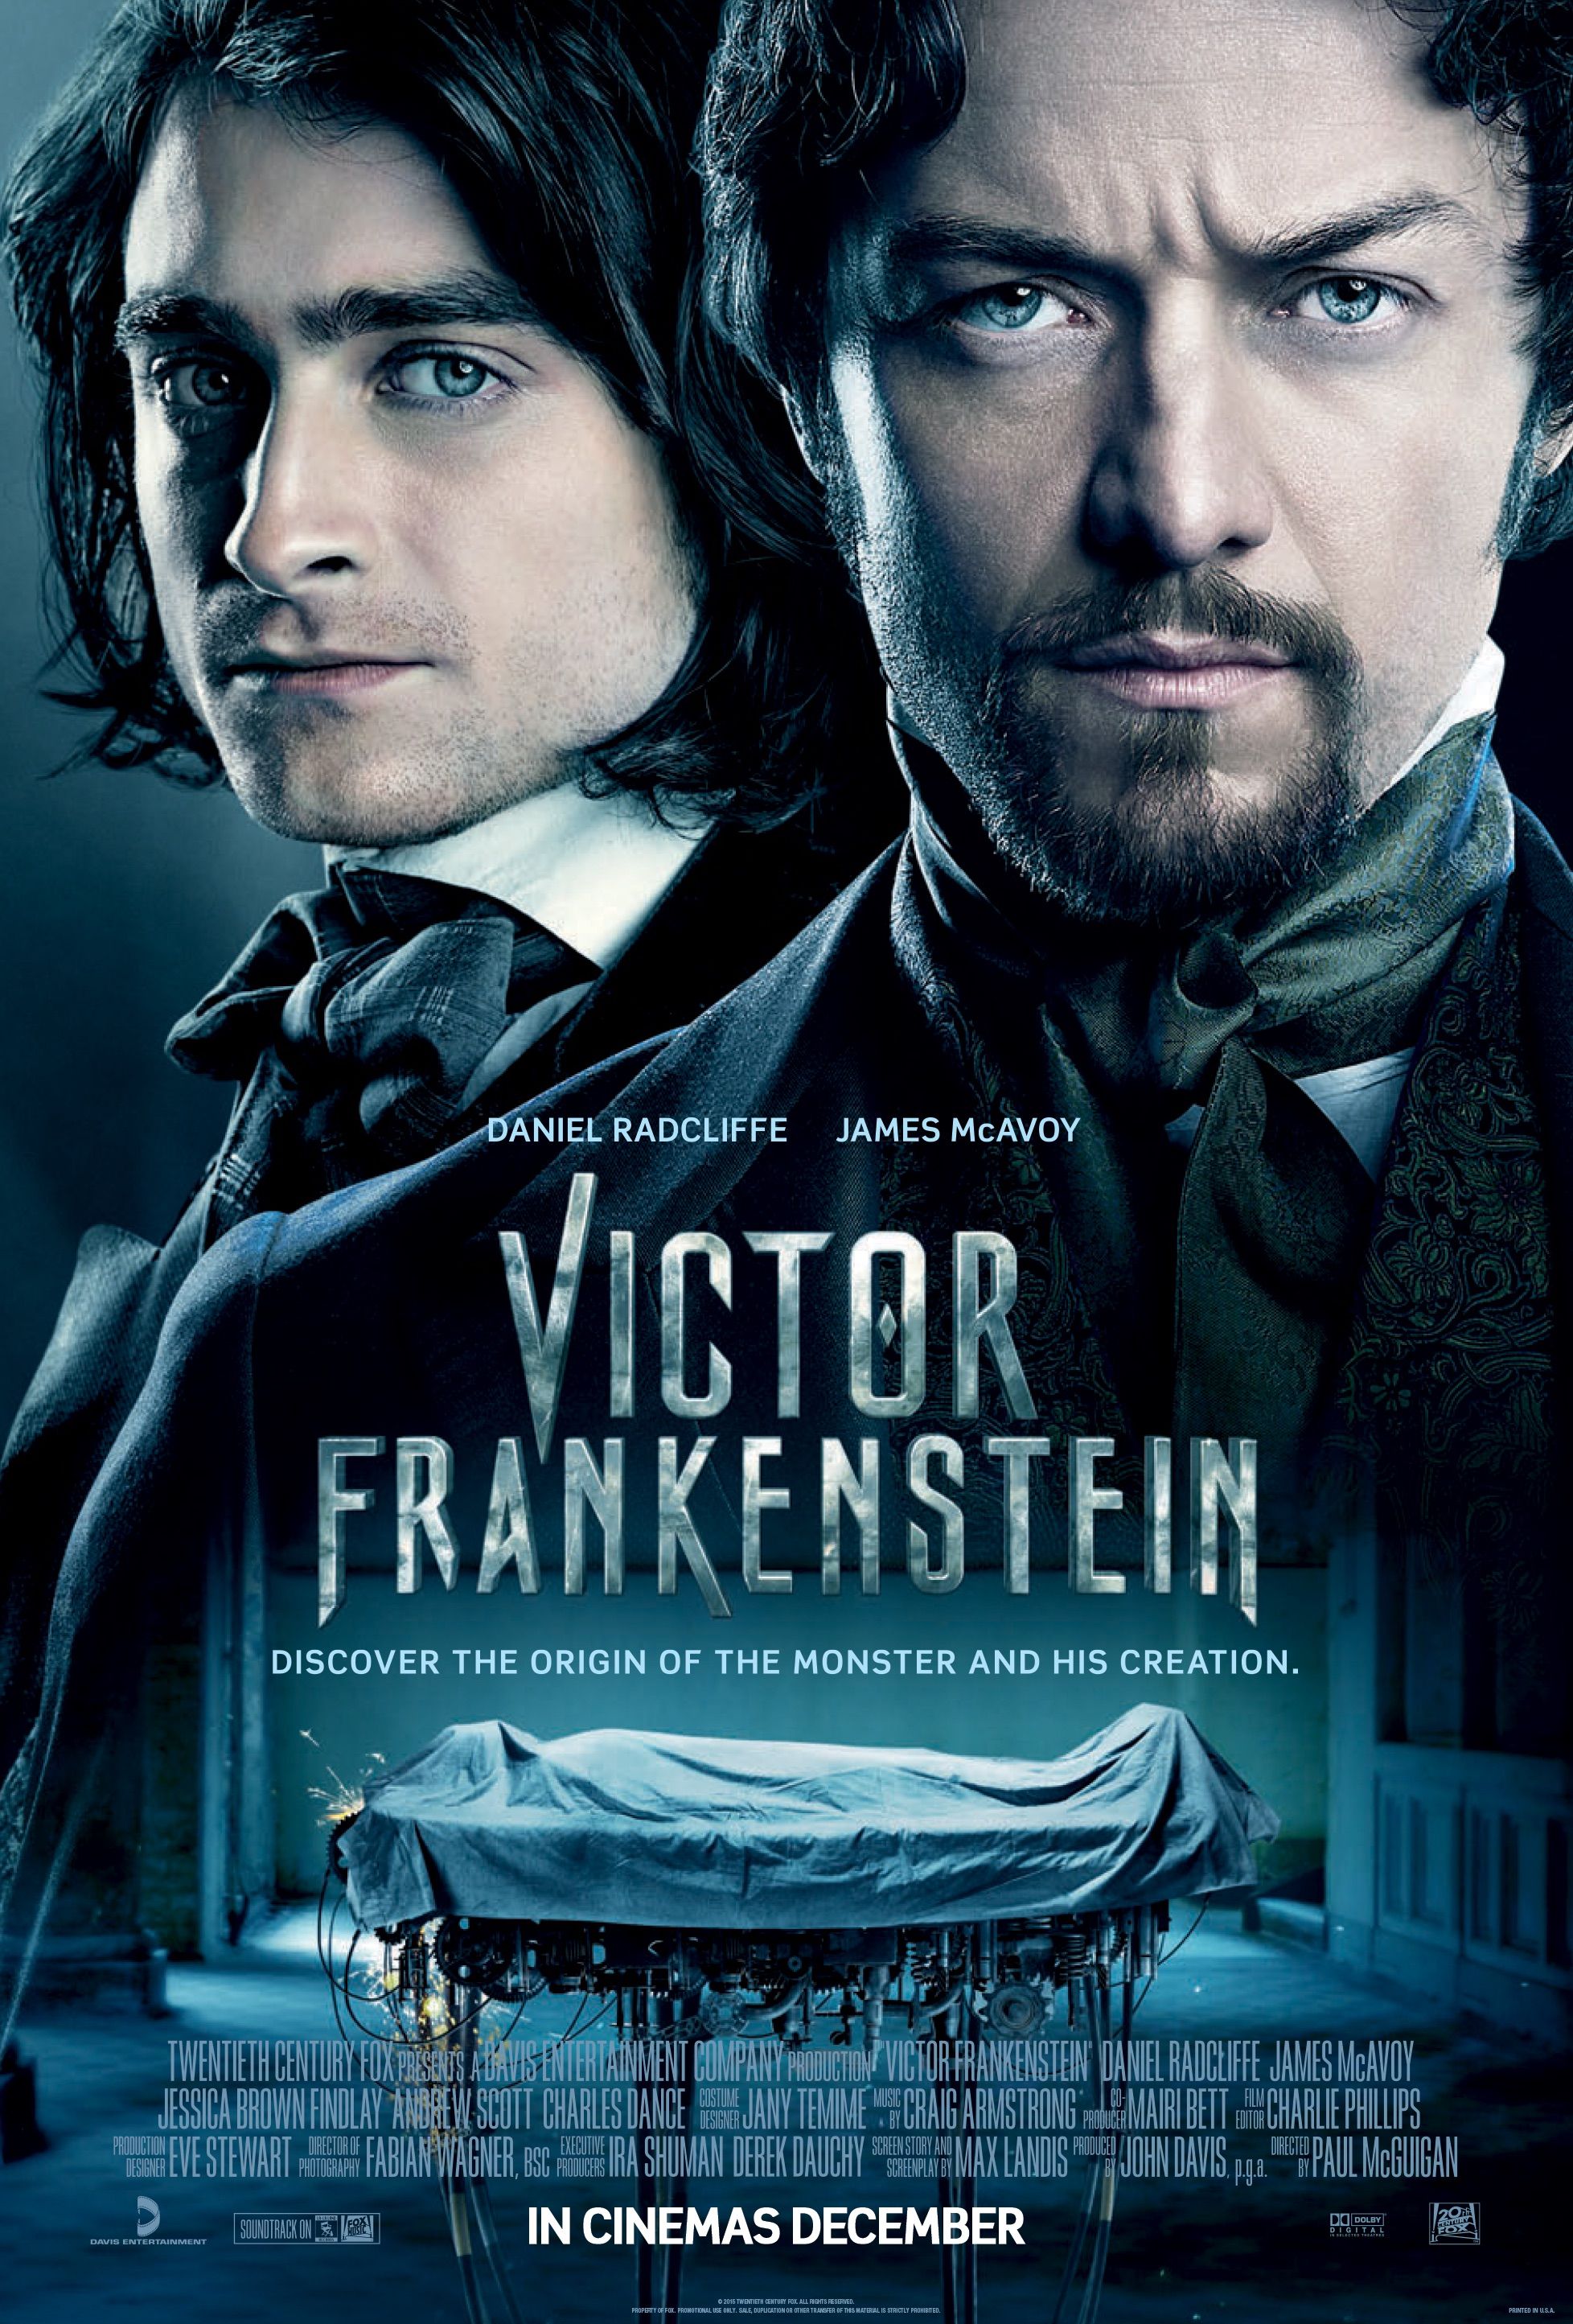 Victor Frankenstein film review: Does D-Radz deliver?